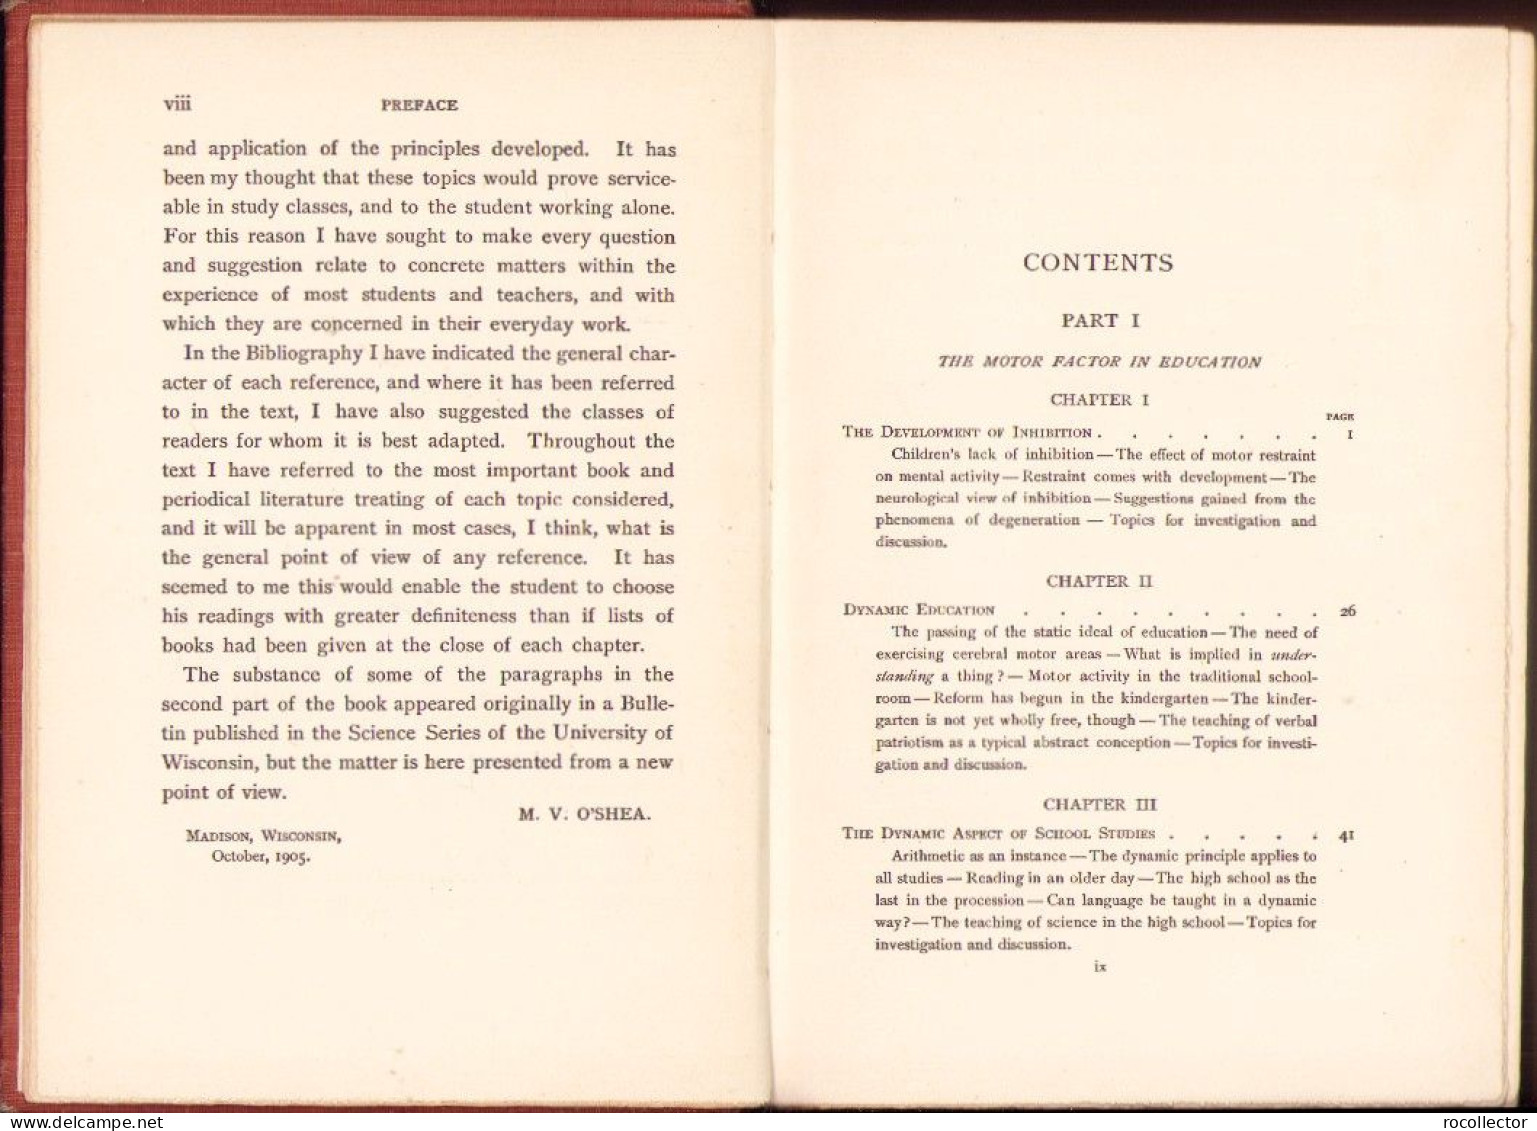 Dynamic Factors In Education By M V O’Shea 1906 C3928N - Alte Bücher